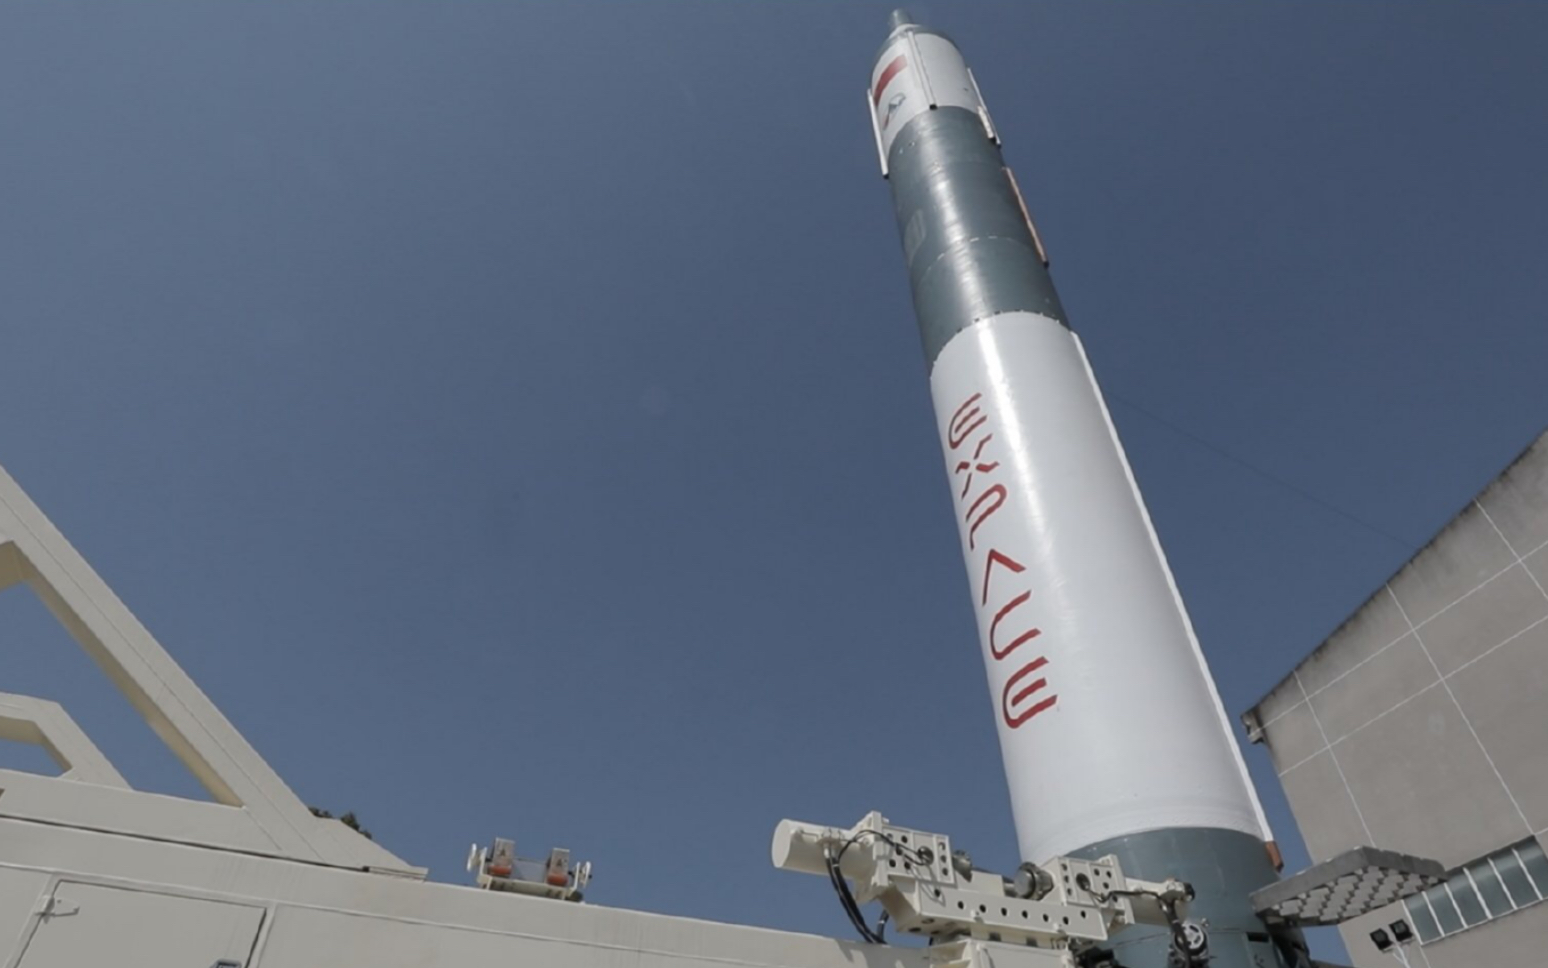 快舟11火箭首飞,载荷包含b站视频卫星